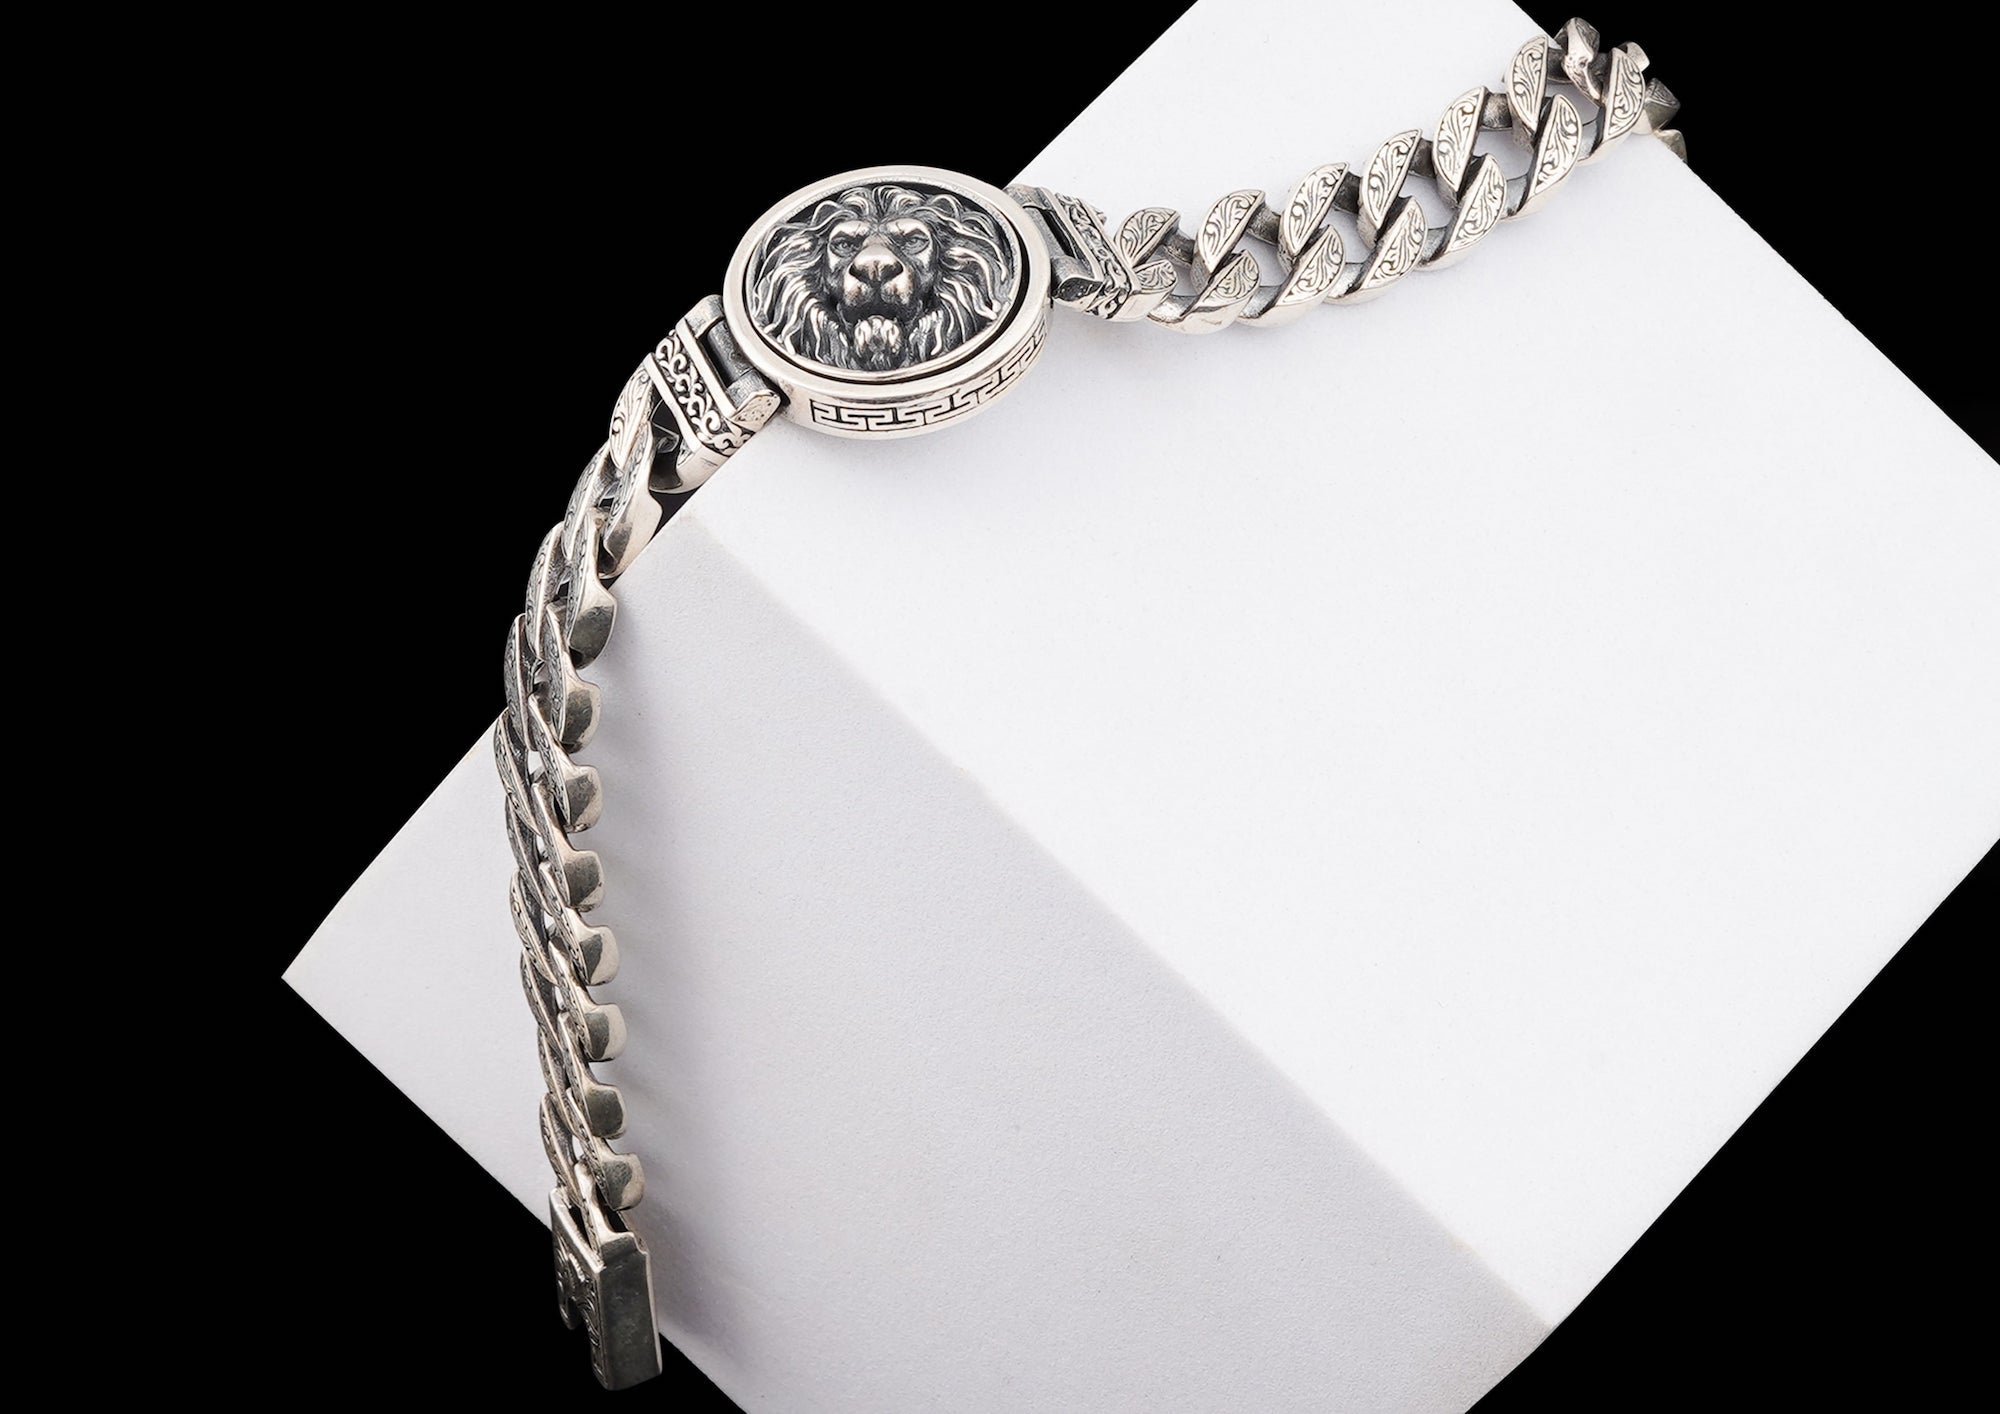 Chandi bracelet design for man